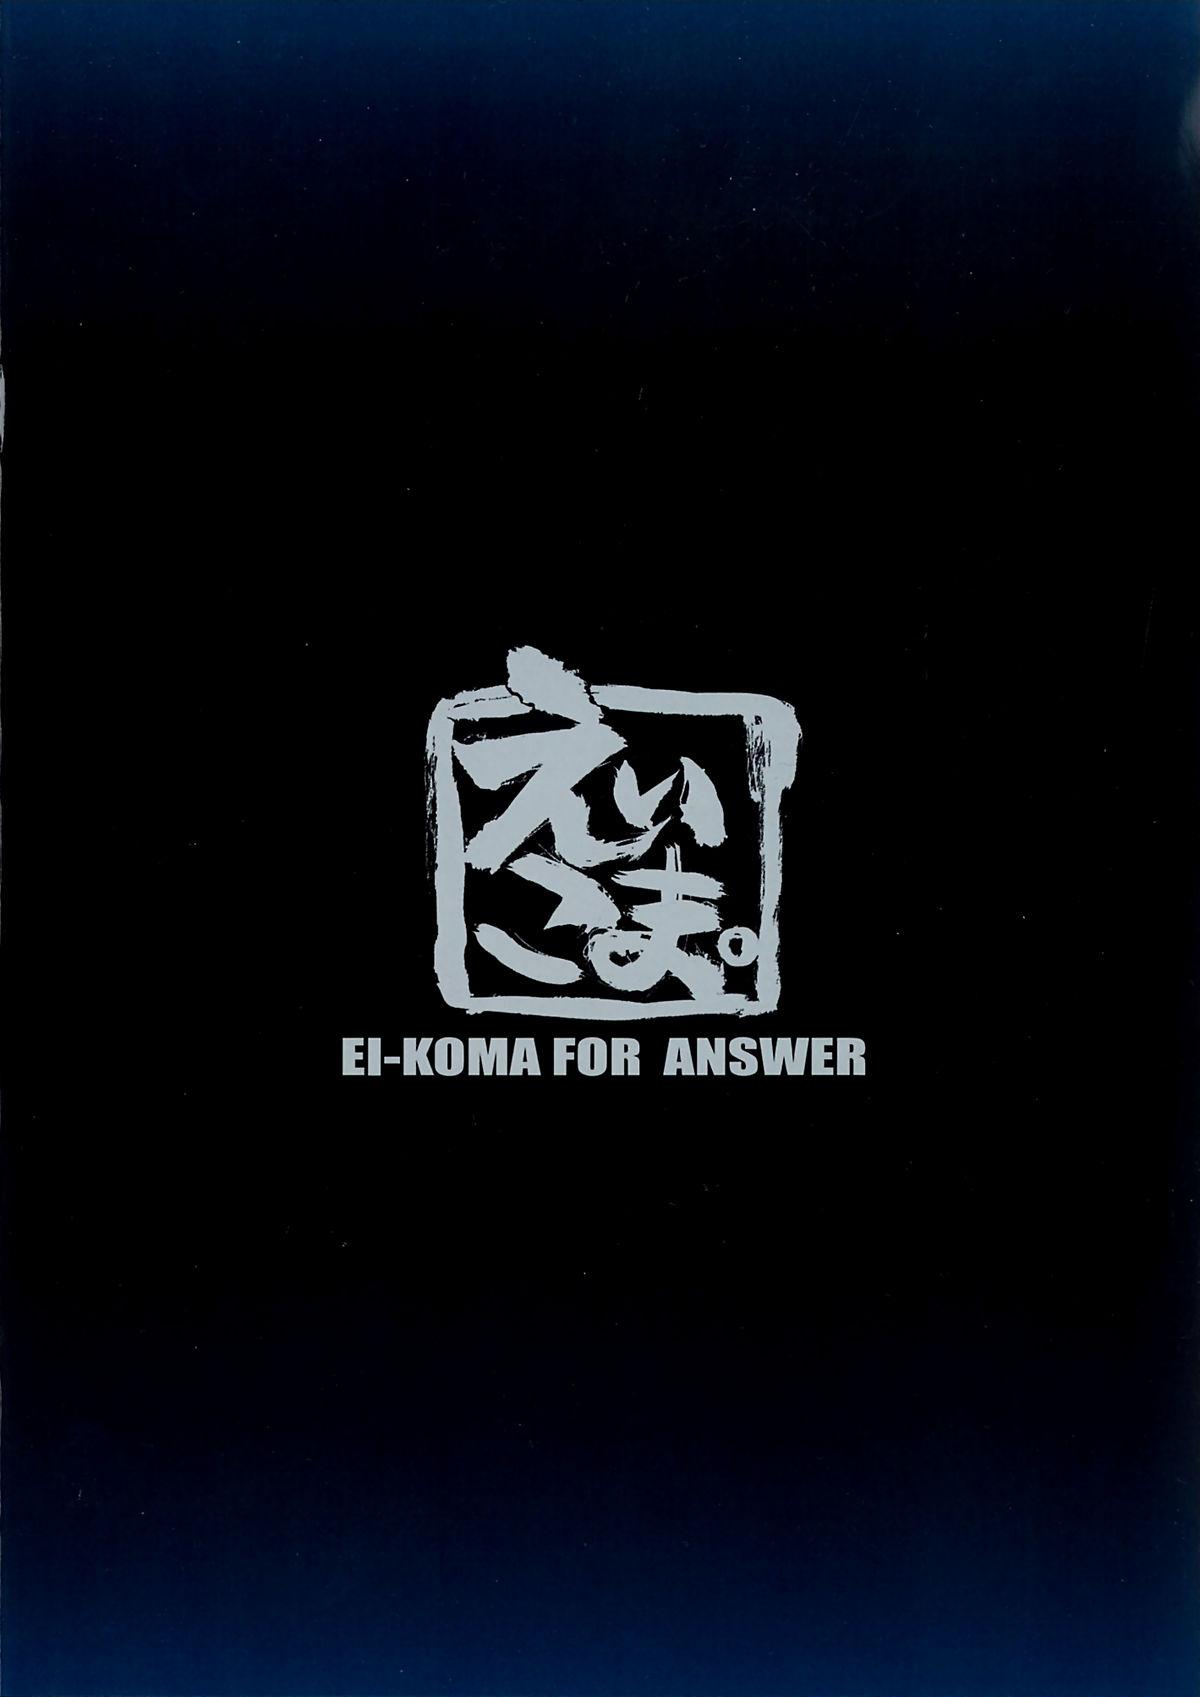 EI-KOMA FOR ANSWER 16